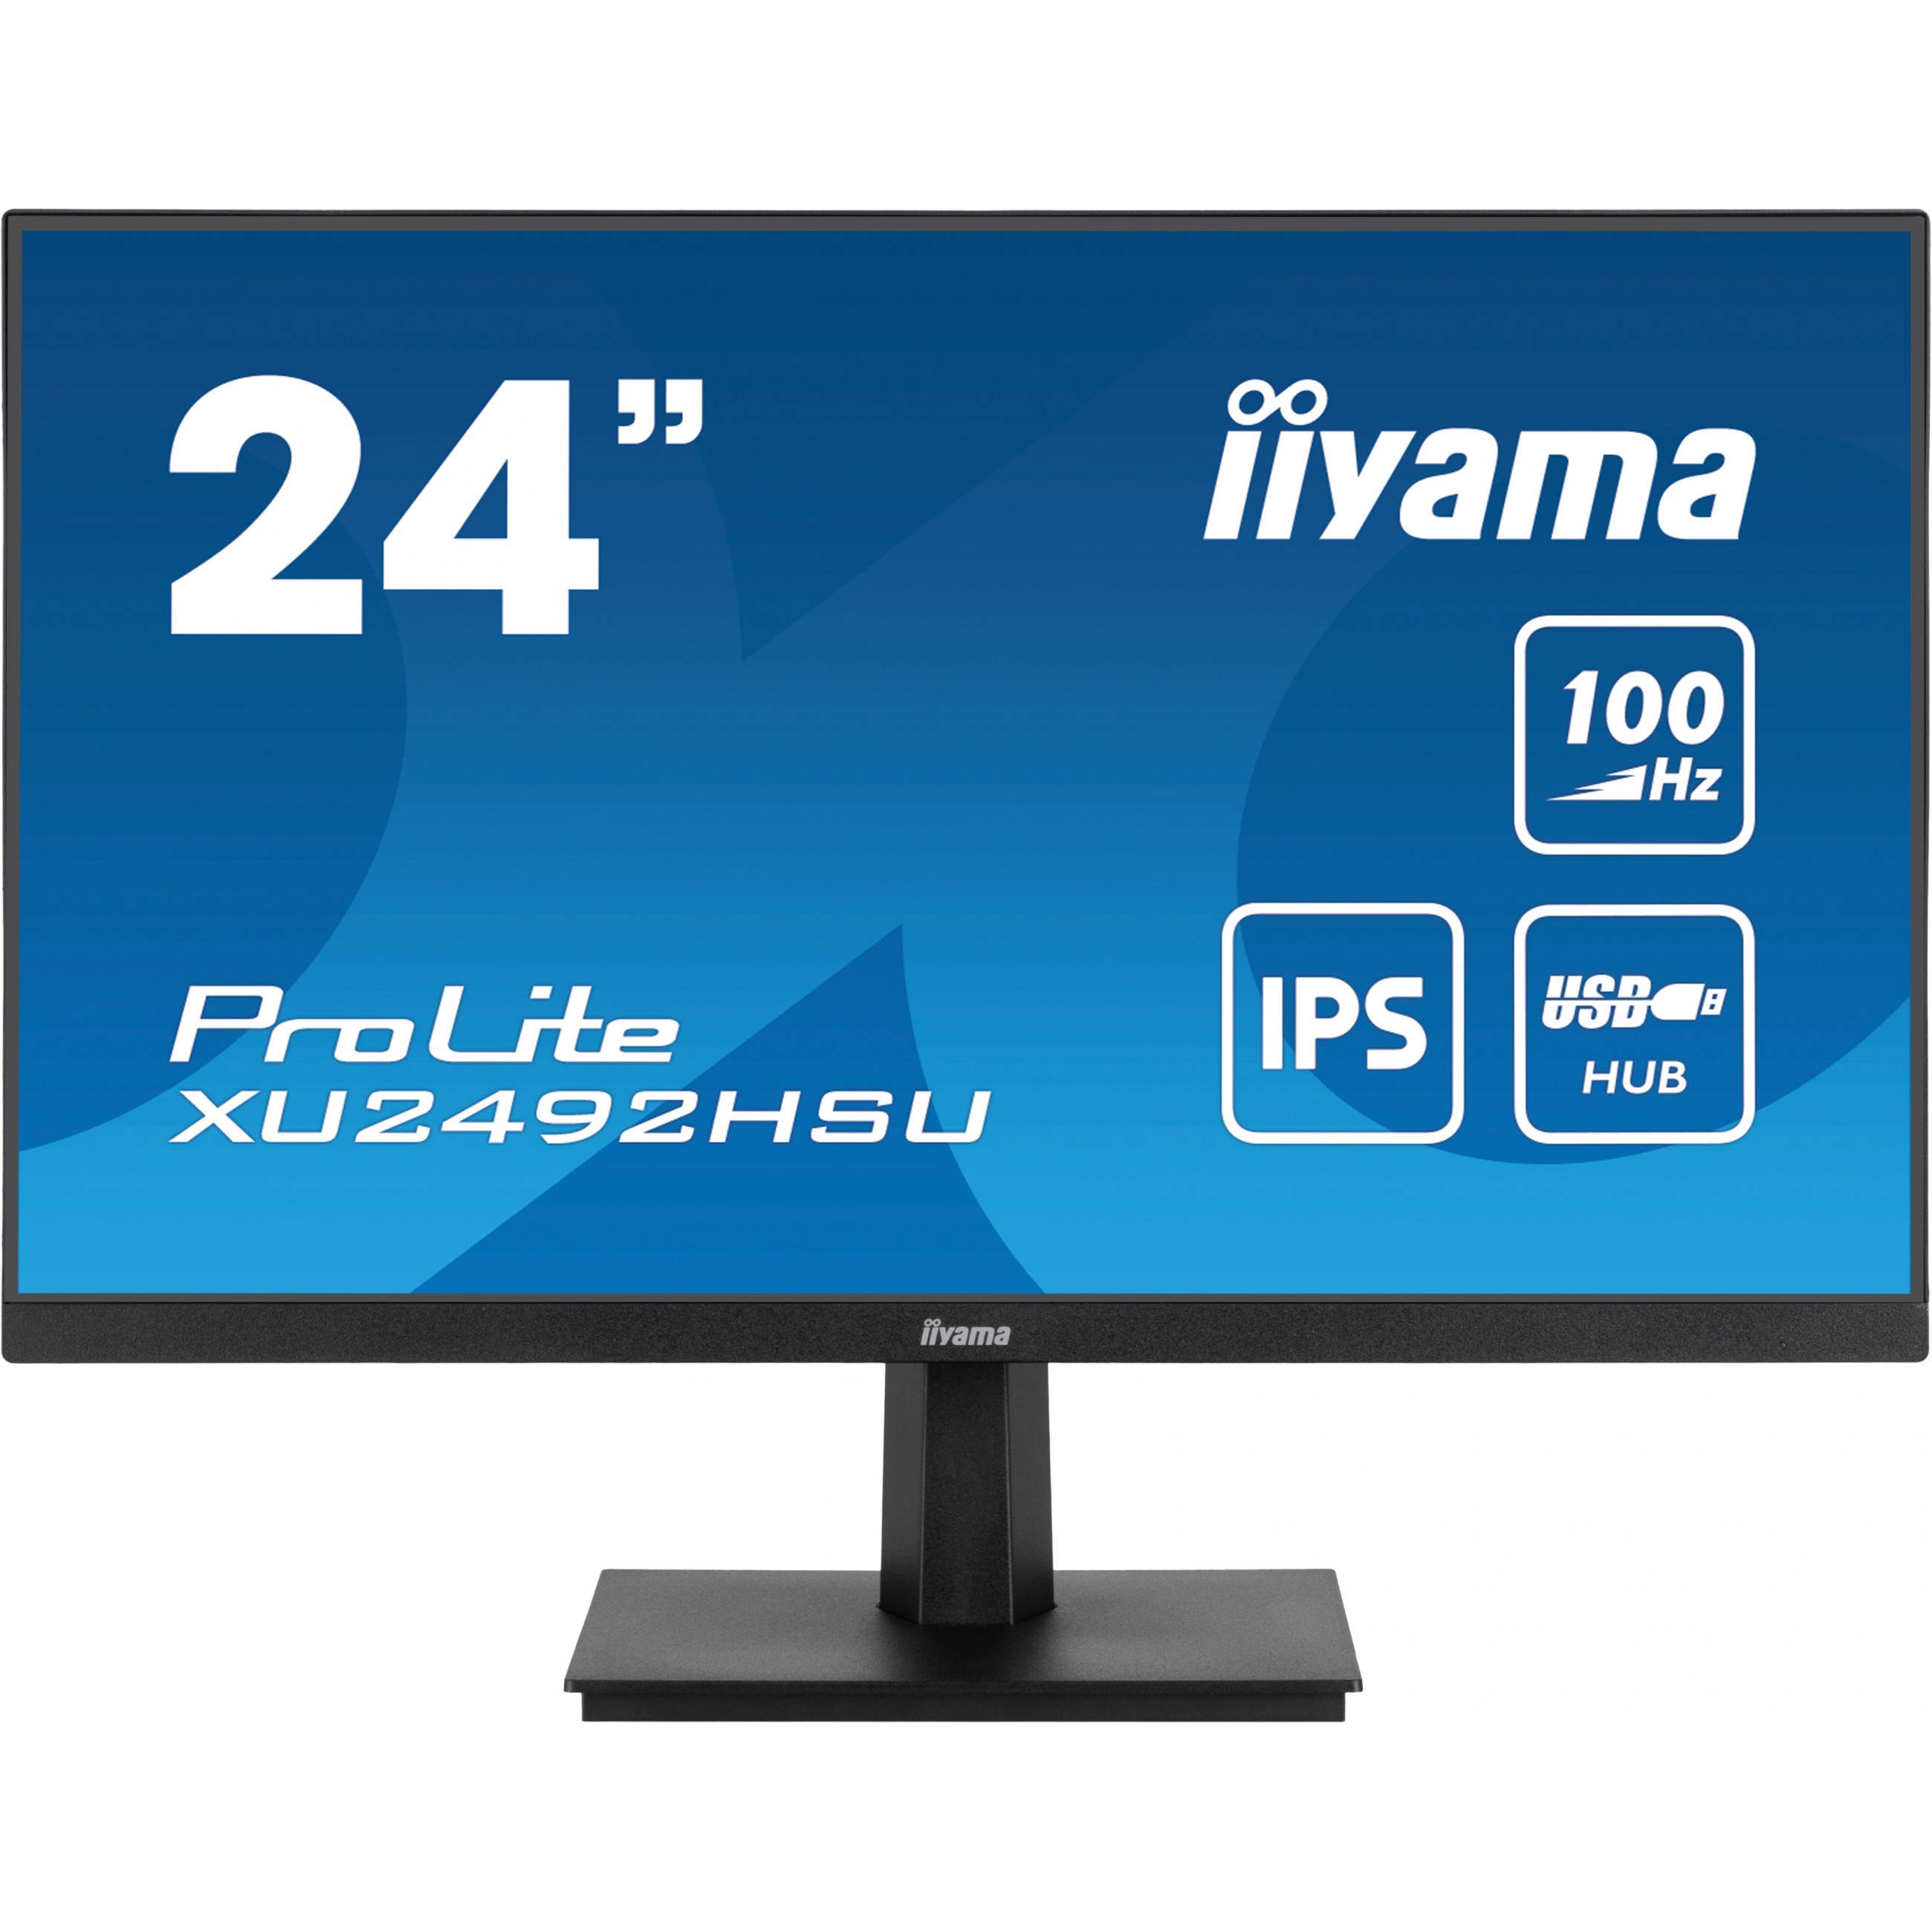 iiyama XU2492HSU-B6, Monitore, iiyama ProLite computer  (BILD1)